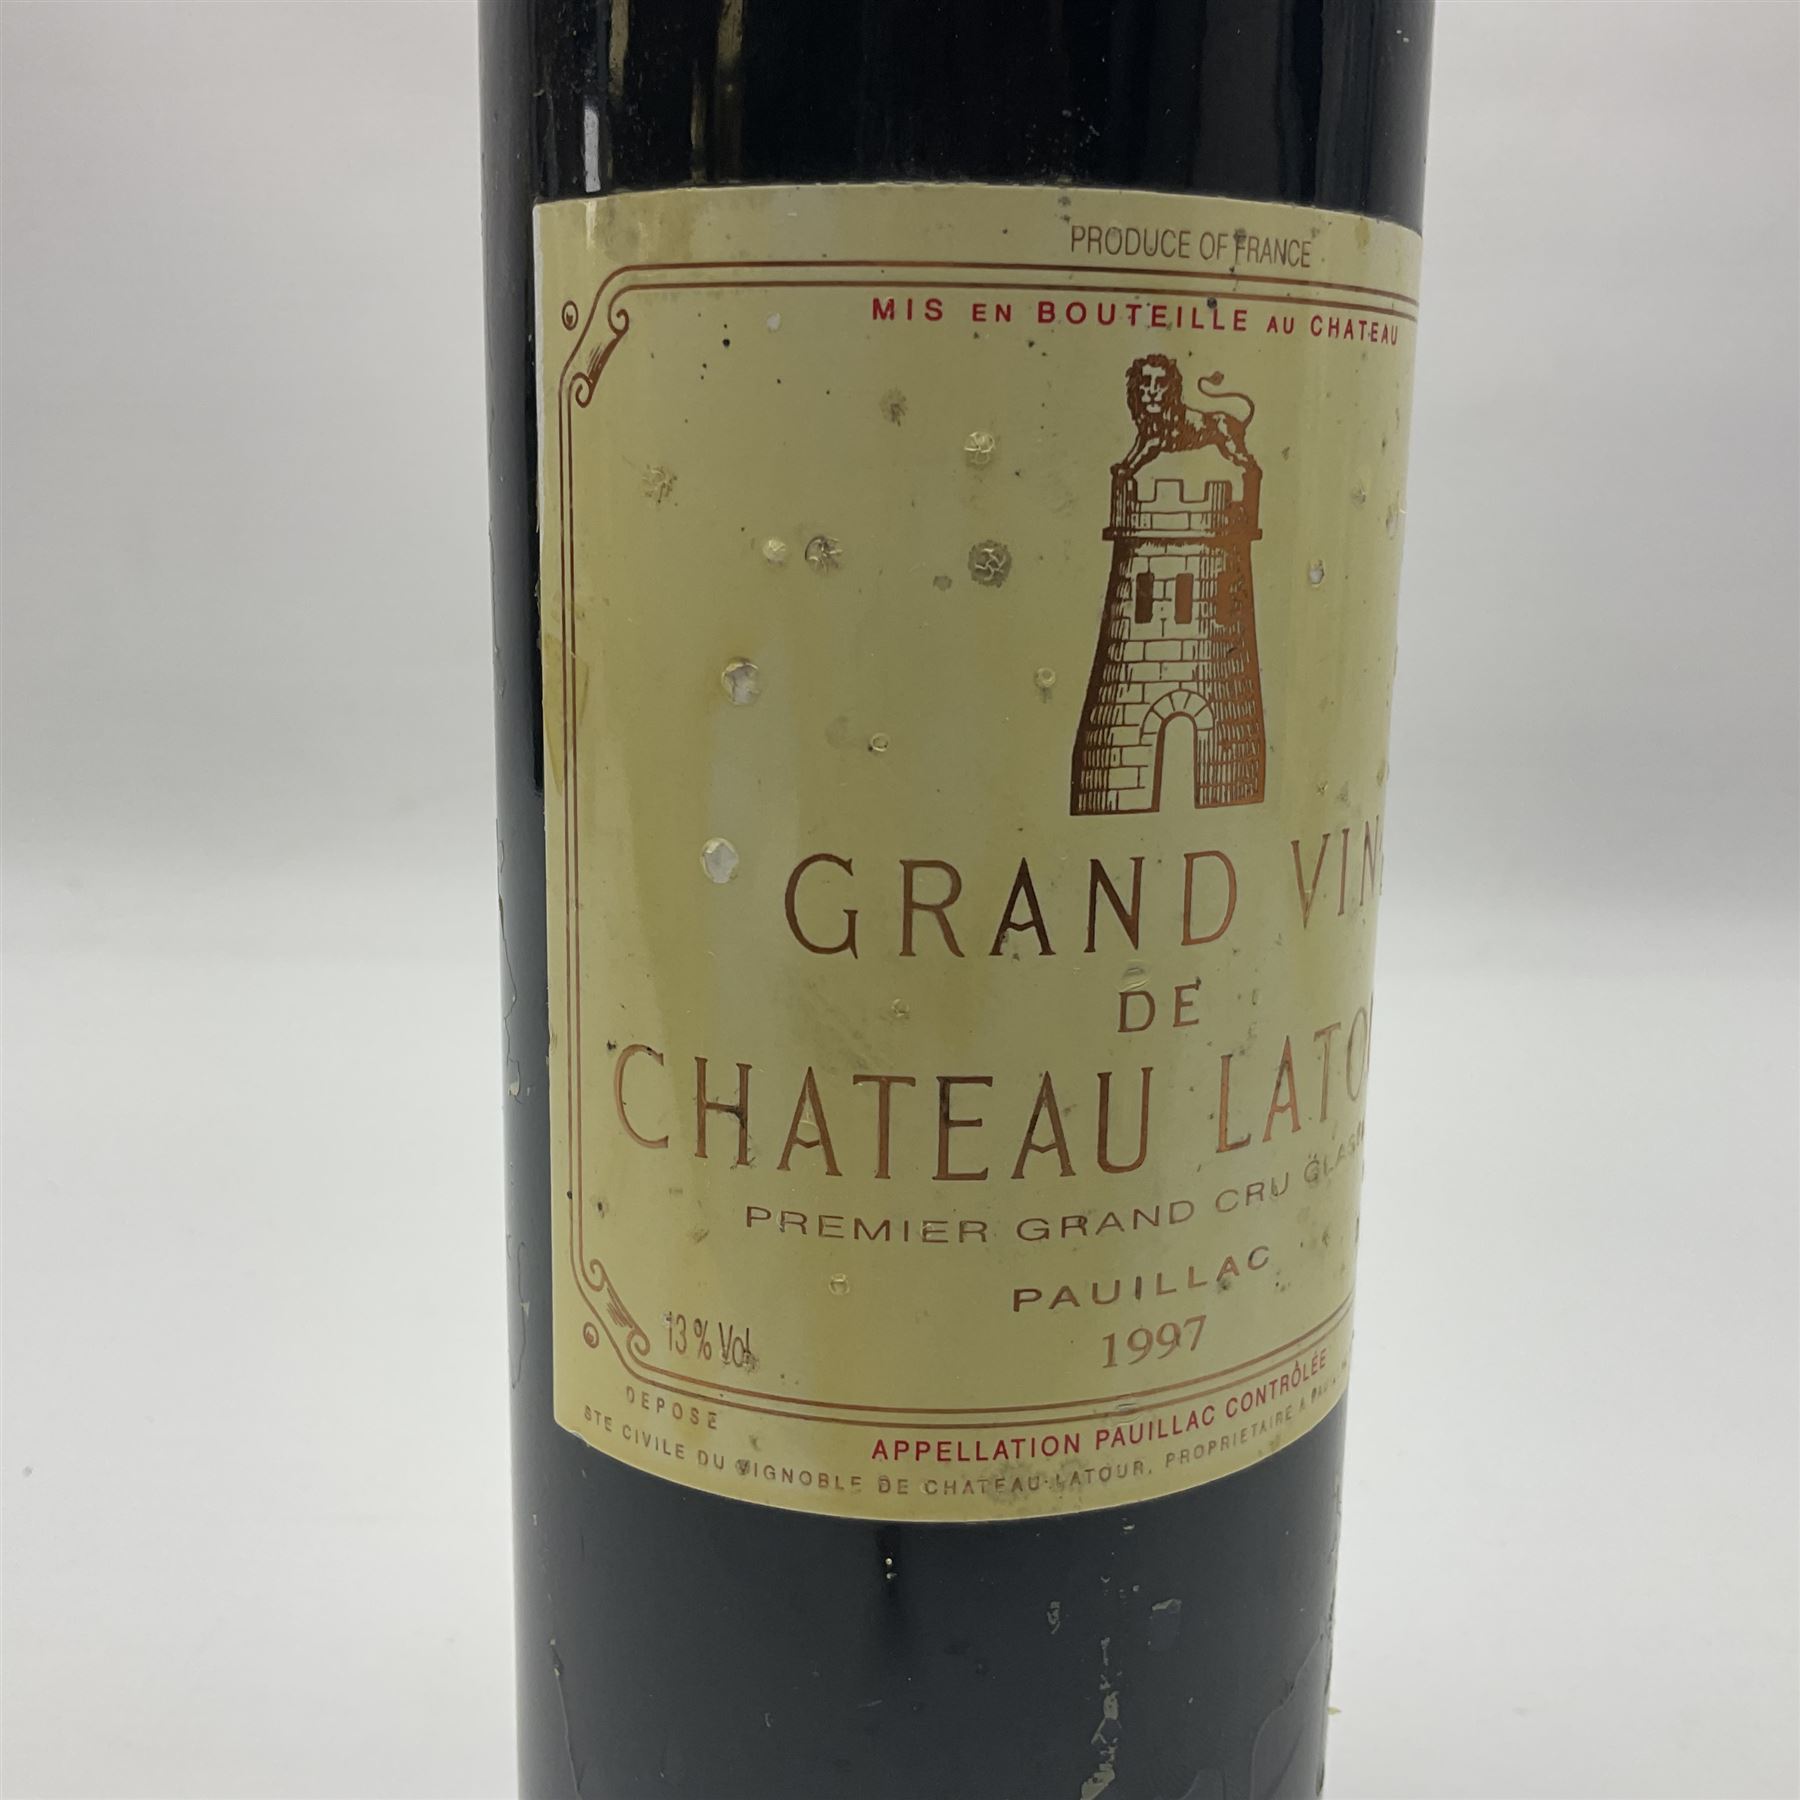 Grand Vin de Chateau Latour - Image 5 of 8